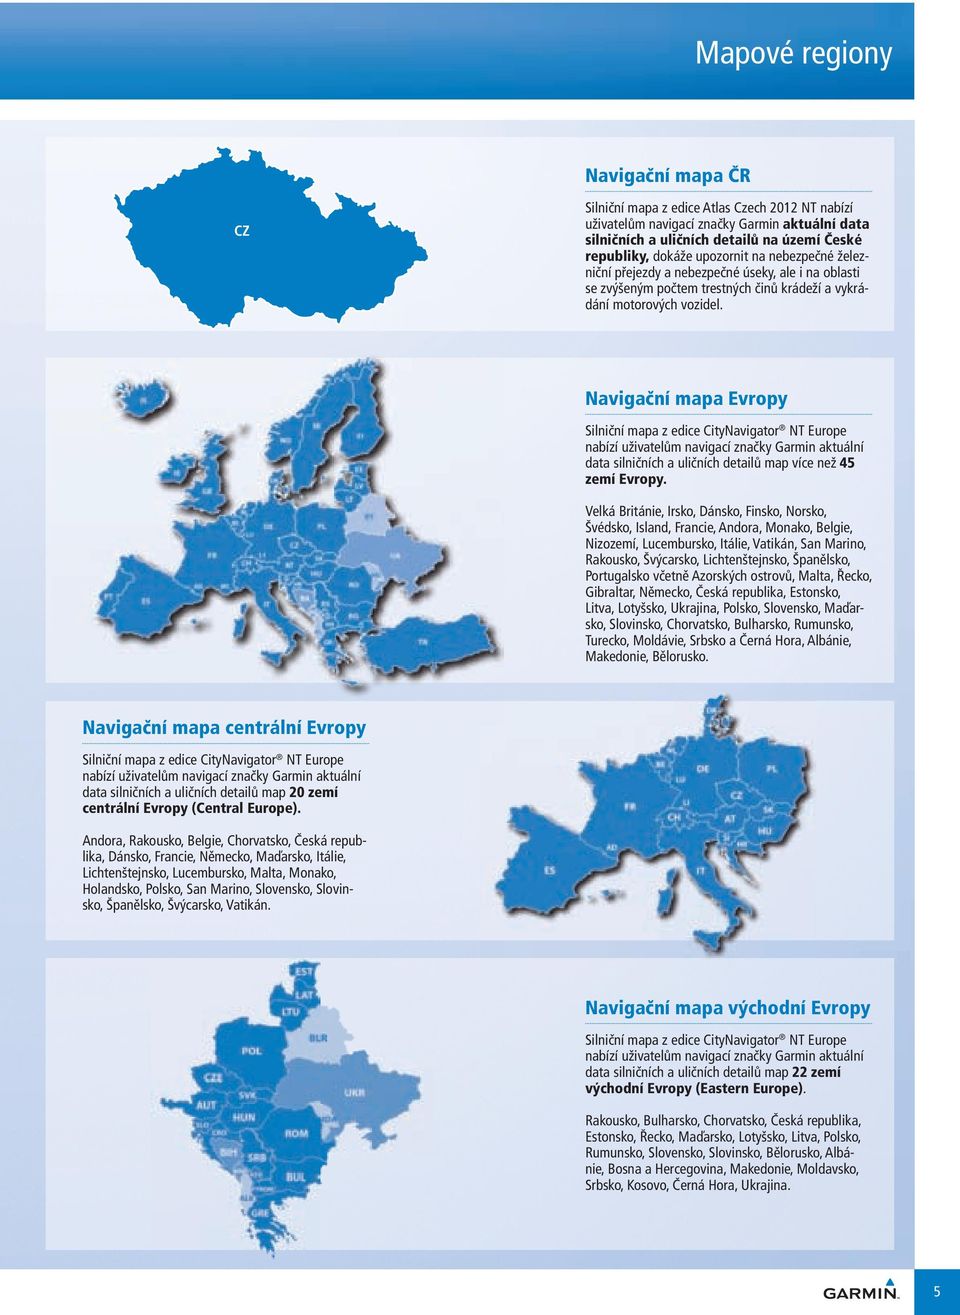 Navigační mapa Evropy Silniční mapa z edice CityNavigator NT Europe nabízí uživatelům navigací značky aktuální data silničních a uličních detailů map více než 45 zemí Evropy.